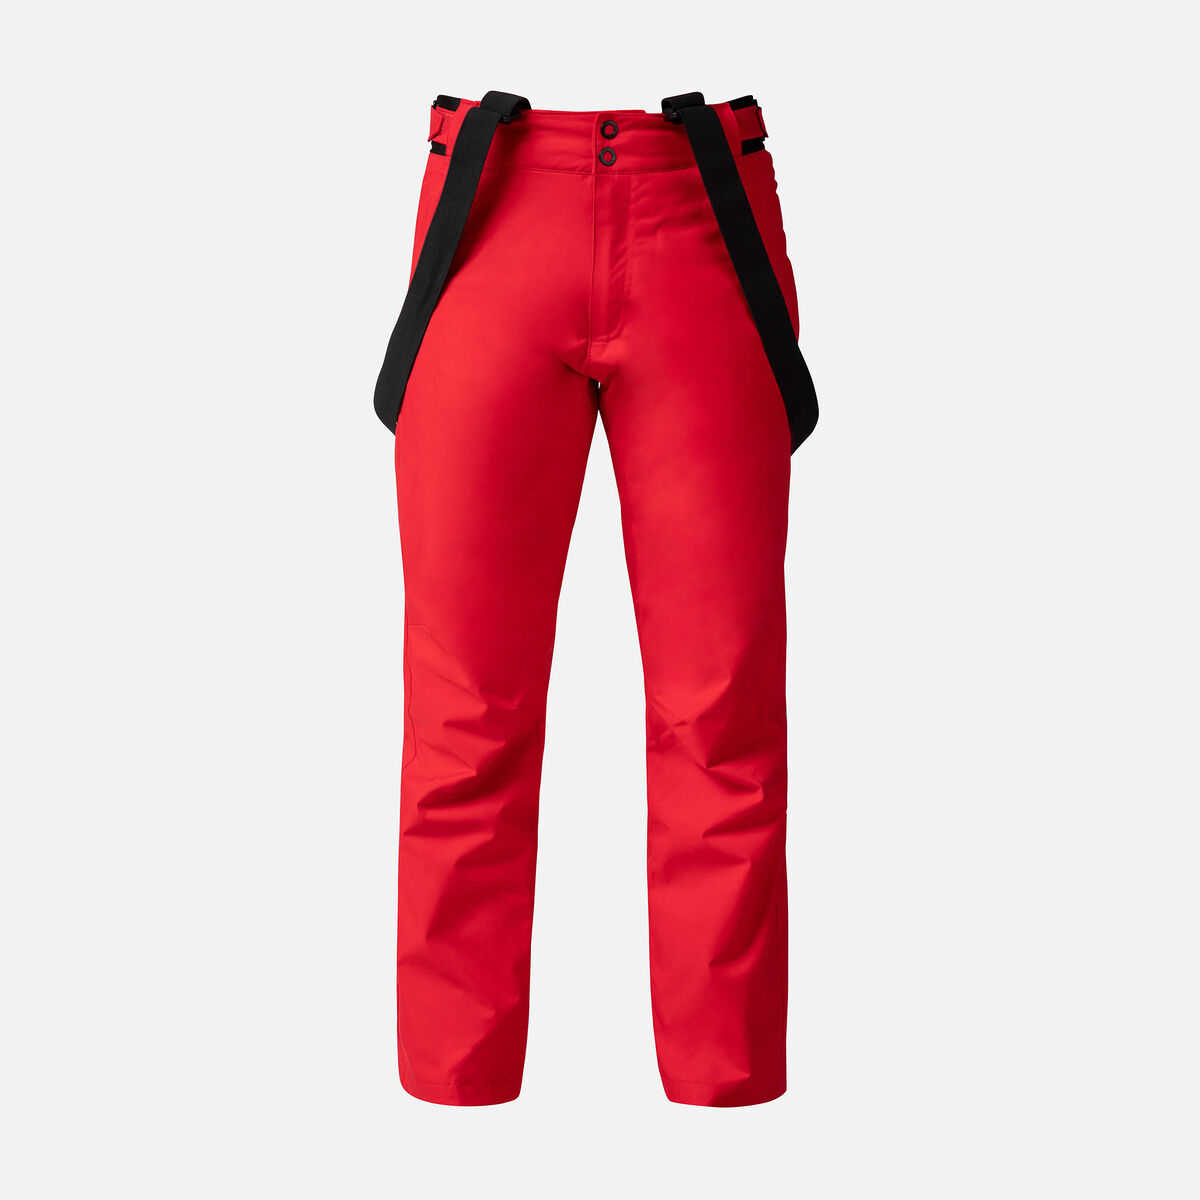 Rossignol Men's Ski Pants red